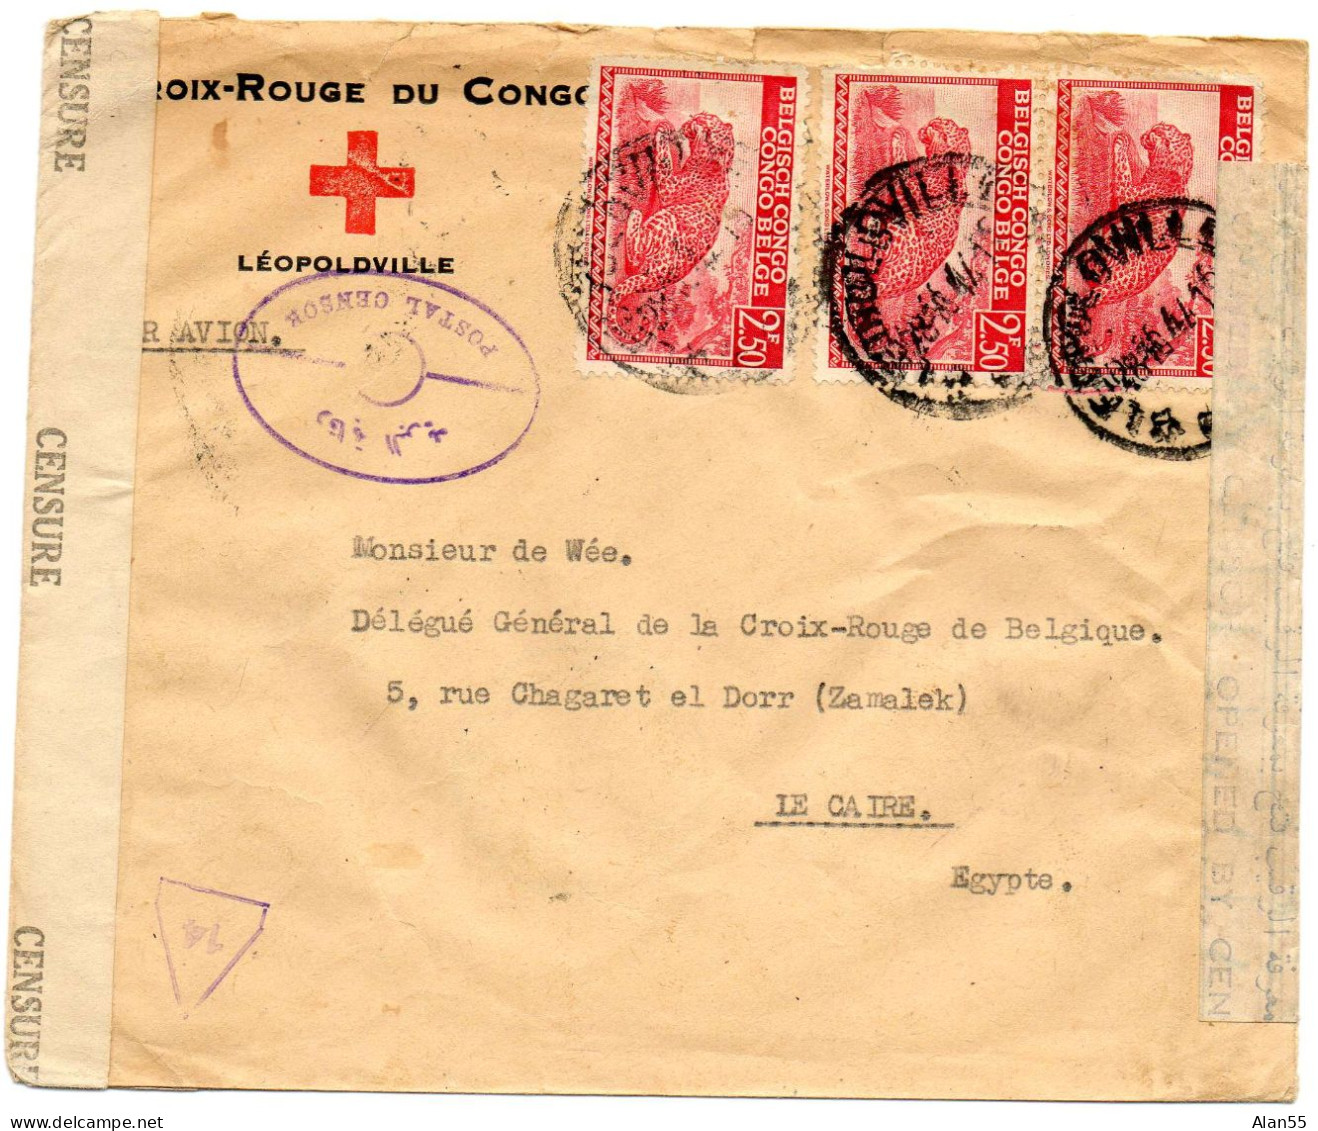 CONGO BELGE. 1944. CROIX-ROUGE DU CONGO A LEOPOLDVILLE POUR CROIX-ROUGE BELGE EN EGYPTE. DOUBLE CENSURE. - Cartas & Documentos